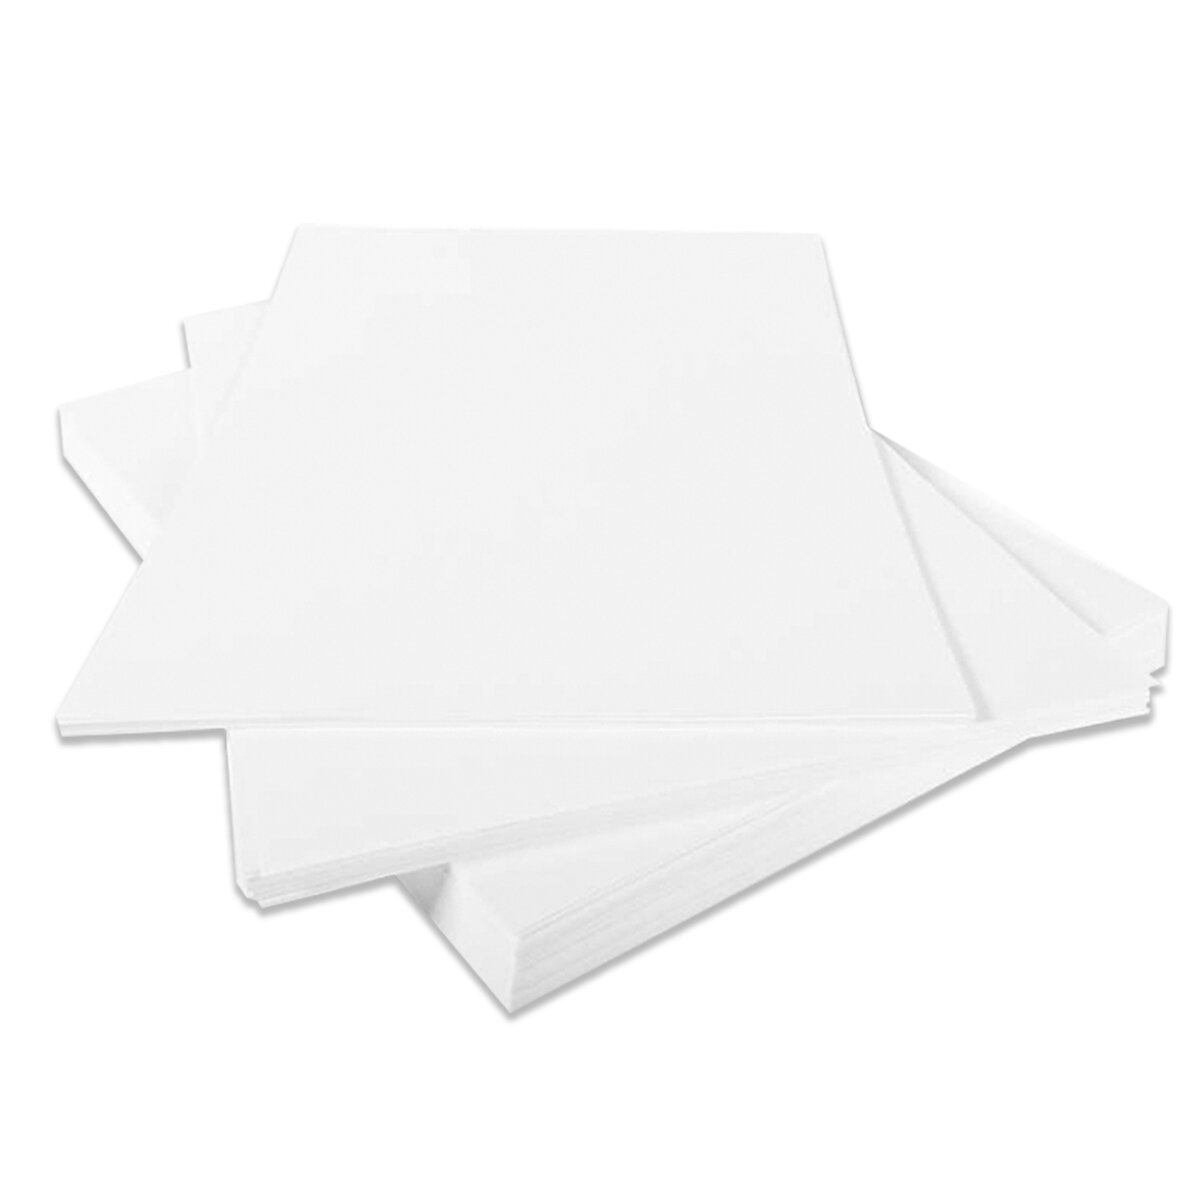 Kopierpapier Universal DIN A4 80 g / qm, 500 Blatt